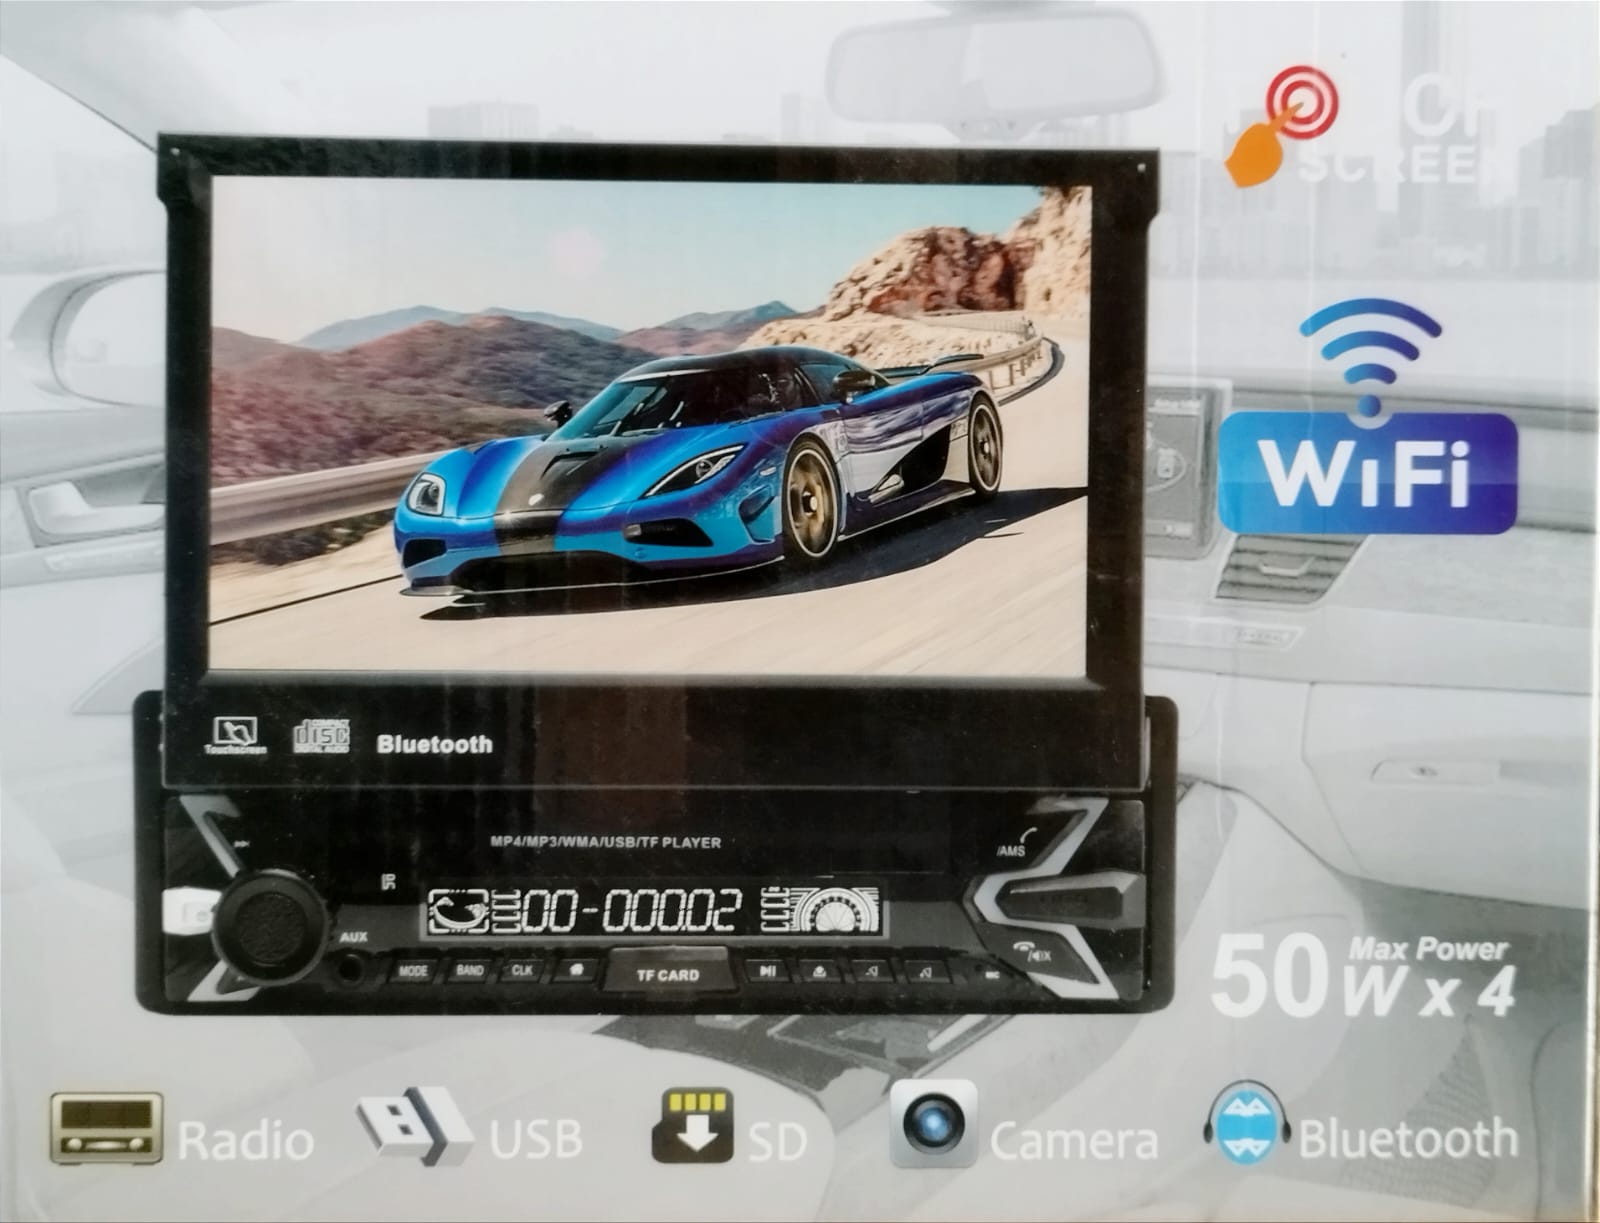 Auto Estereo 7 Pantalla Retractil 1 Din Android Auto Carplay